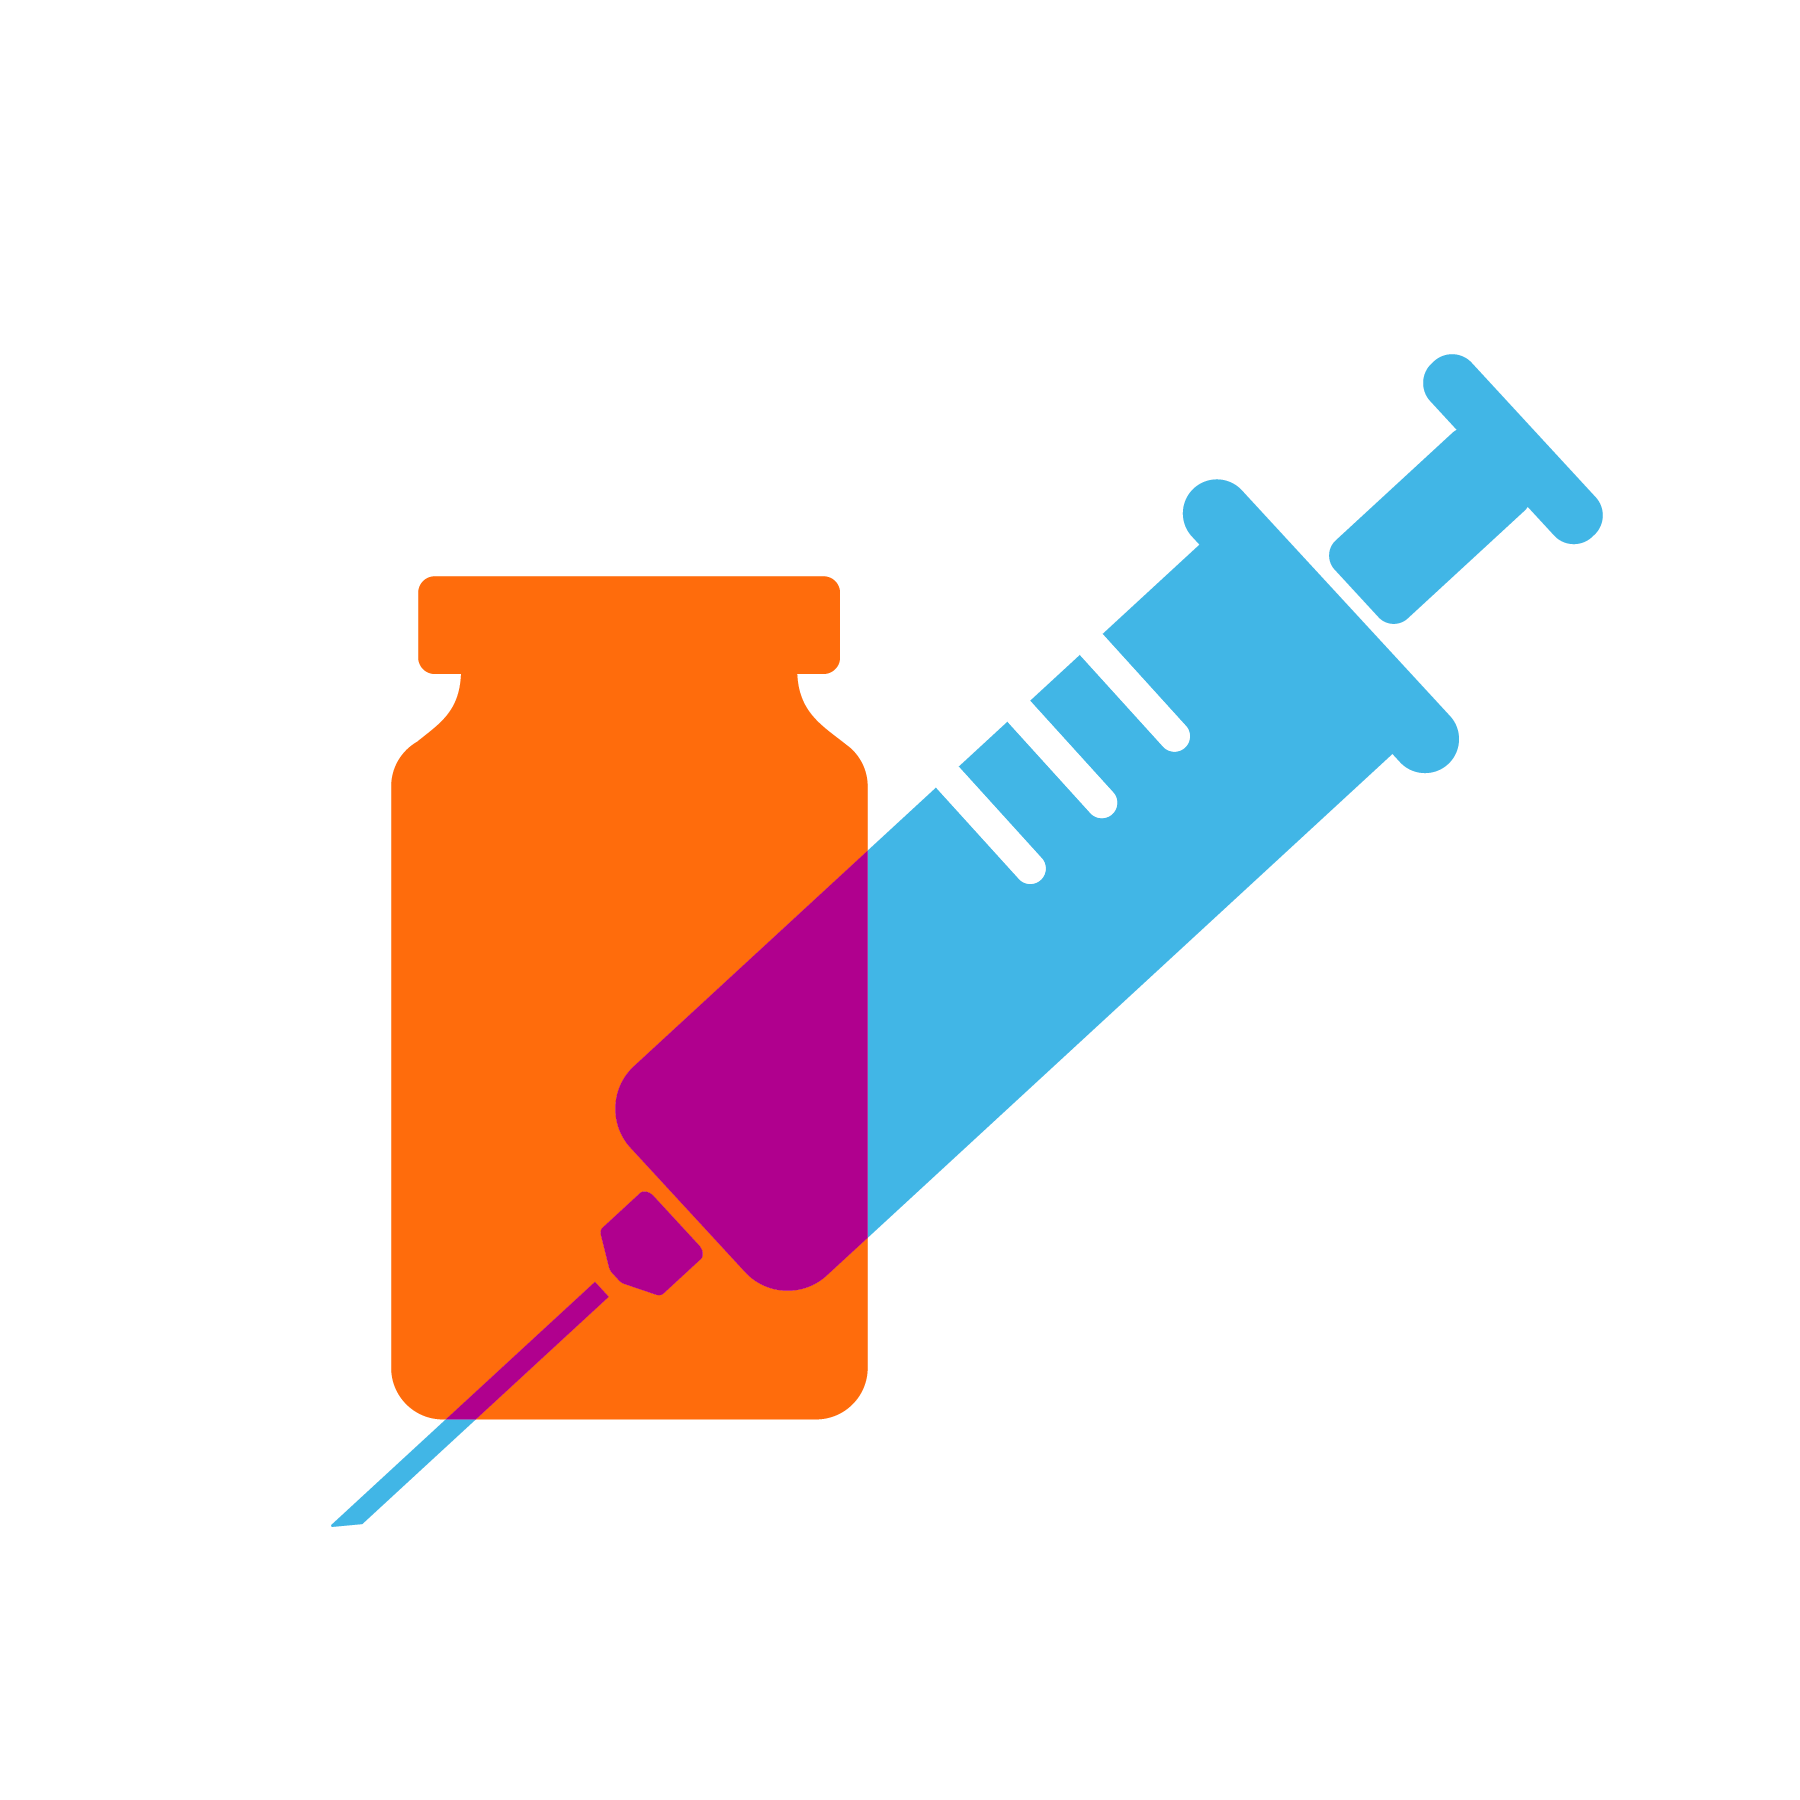 COVID-19 vaccines icon